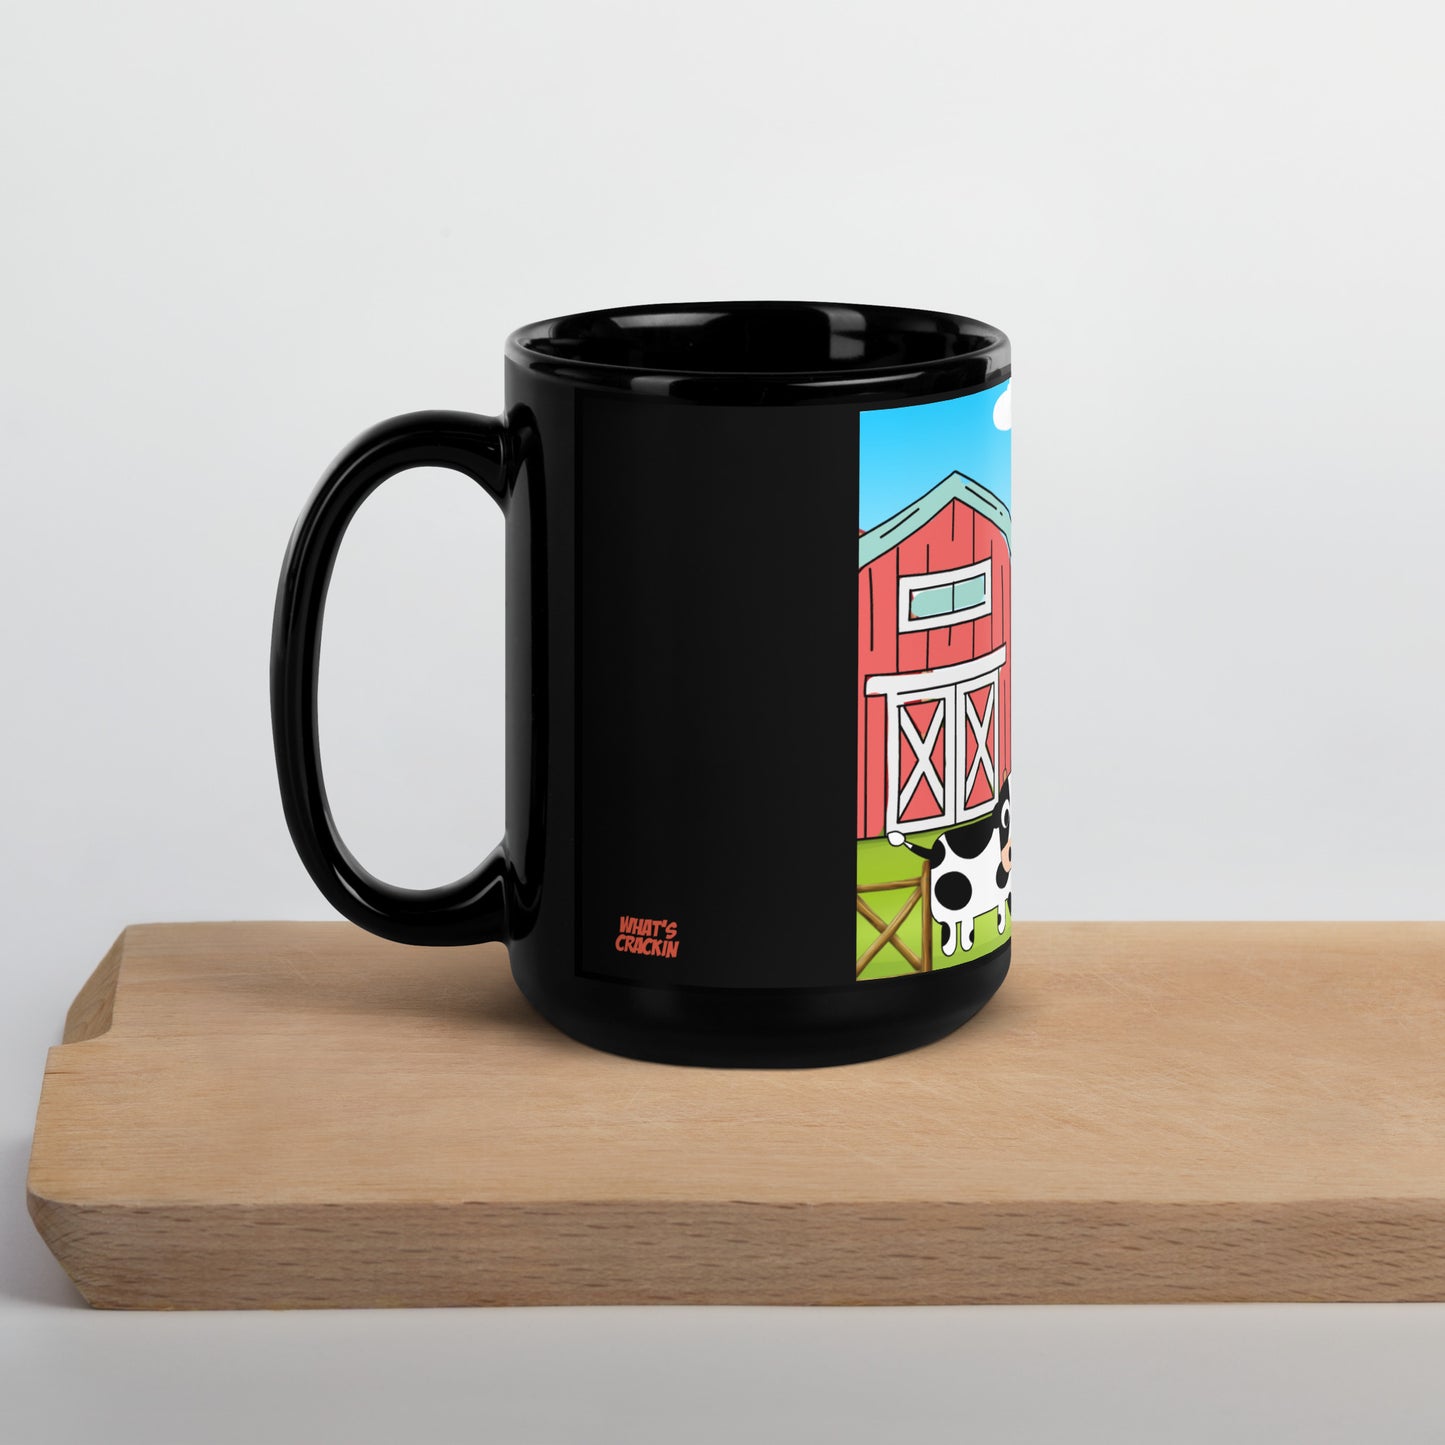 Tazes Farm Coffee Mug